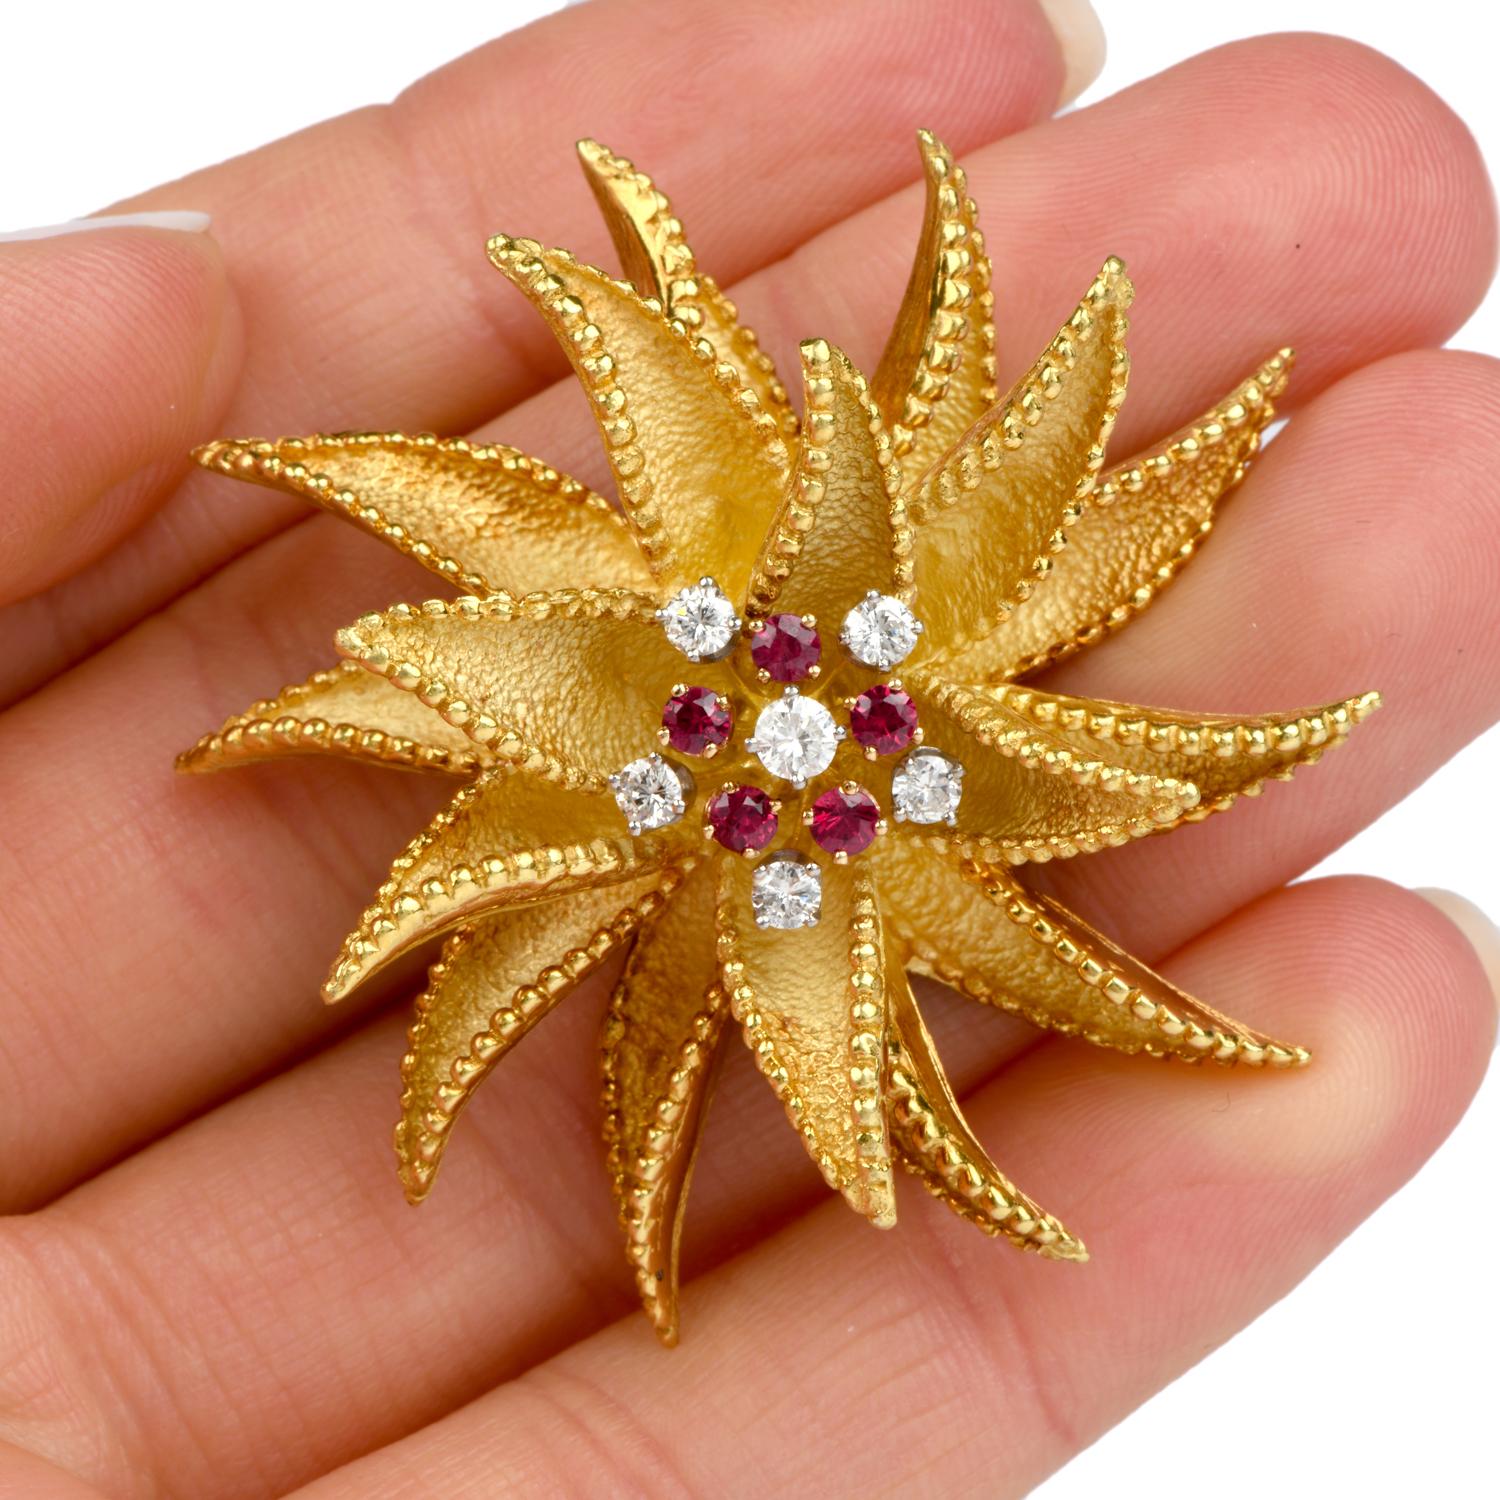 Diese bemerkenswert gestaltete Vintage-Brosche wurde in einem 
floralen Pinwheel-Motiv und aus 18 Karat Gold gefertigt.
Jedes Blütenblatt ist sorgfältig mit einer fein geschliffenen Perle versehen 
muster an den Rändern und eine sandgestrahlte Optik